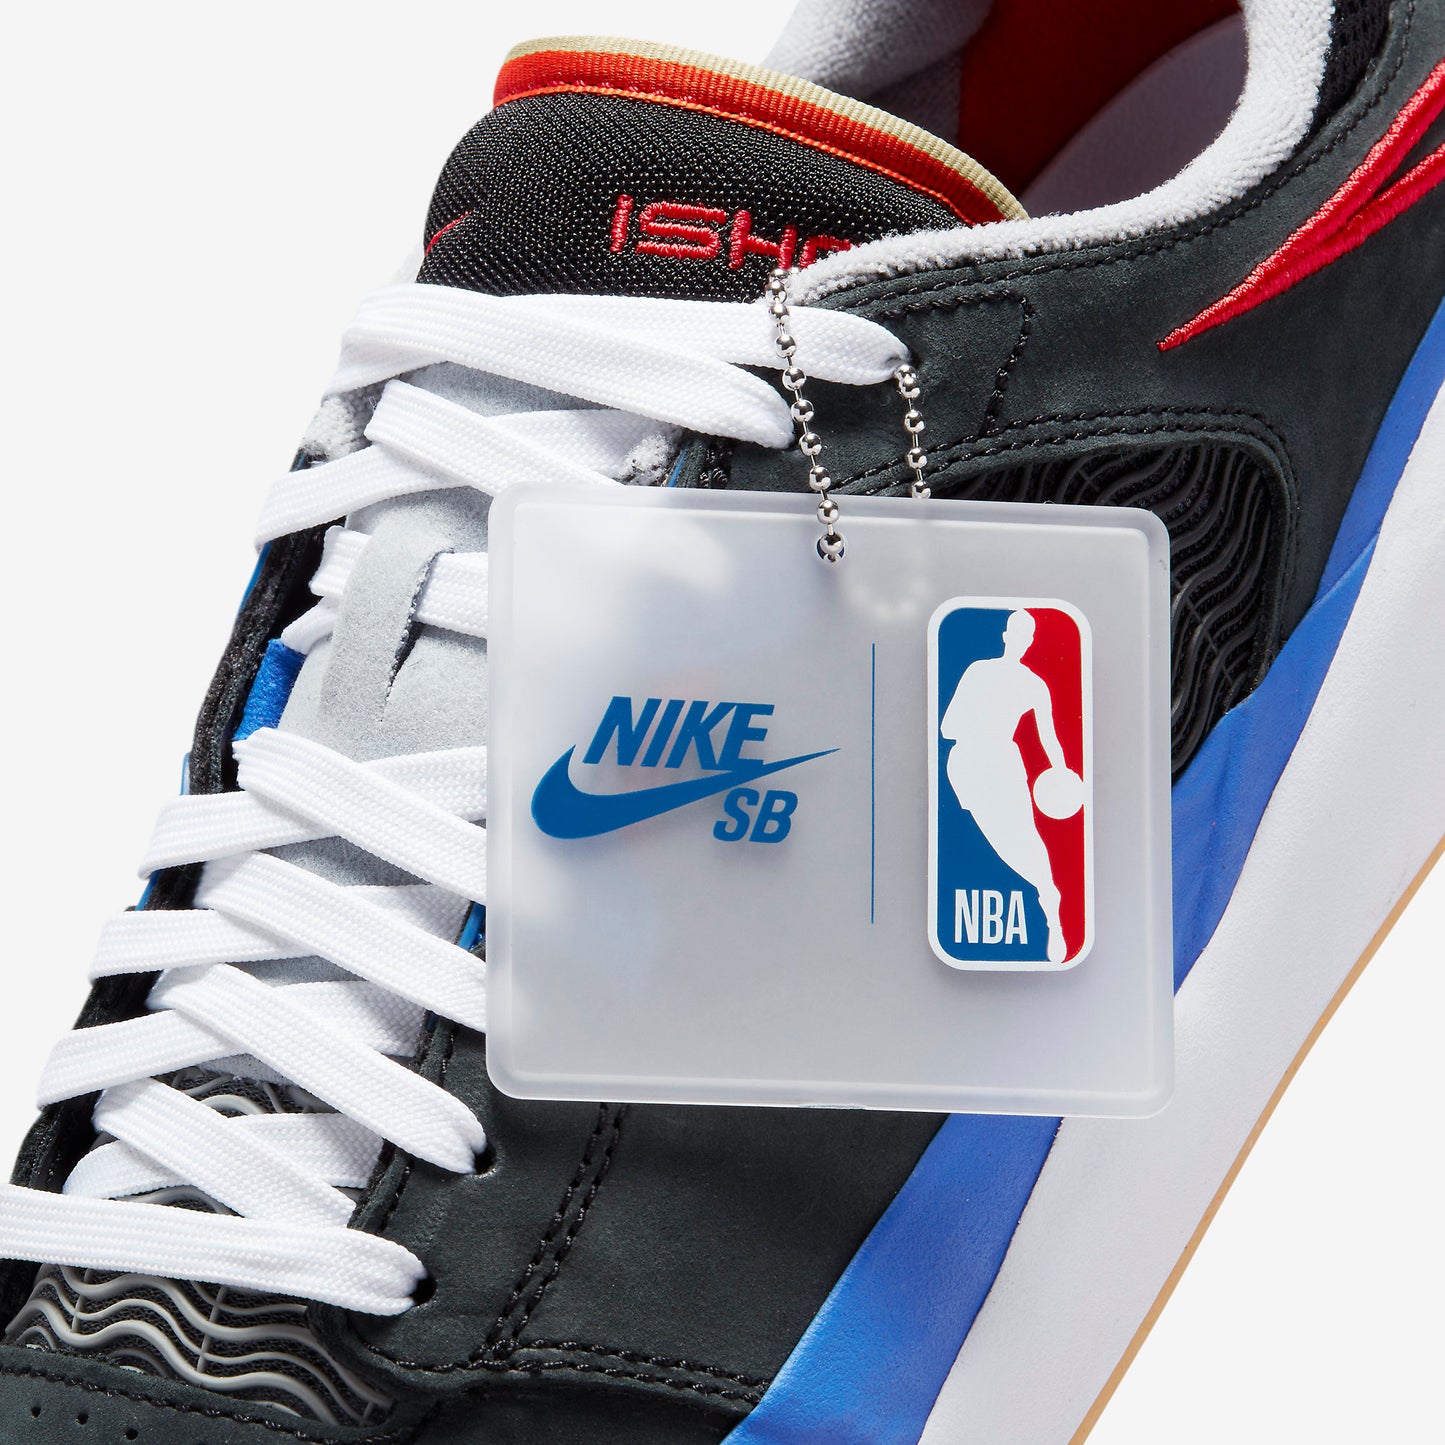 Nike SB Ishod Wair x NBA 75th Anniversary